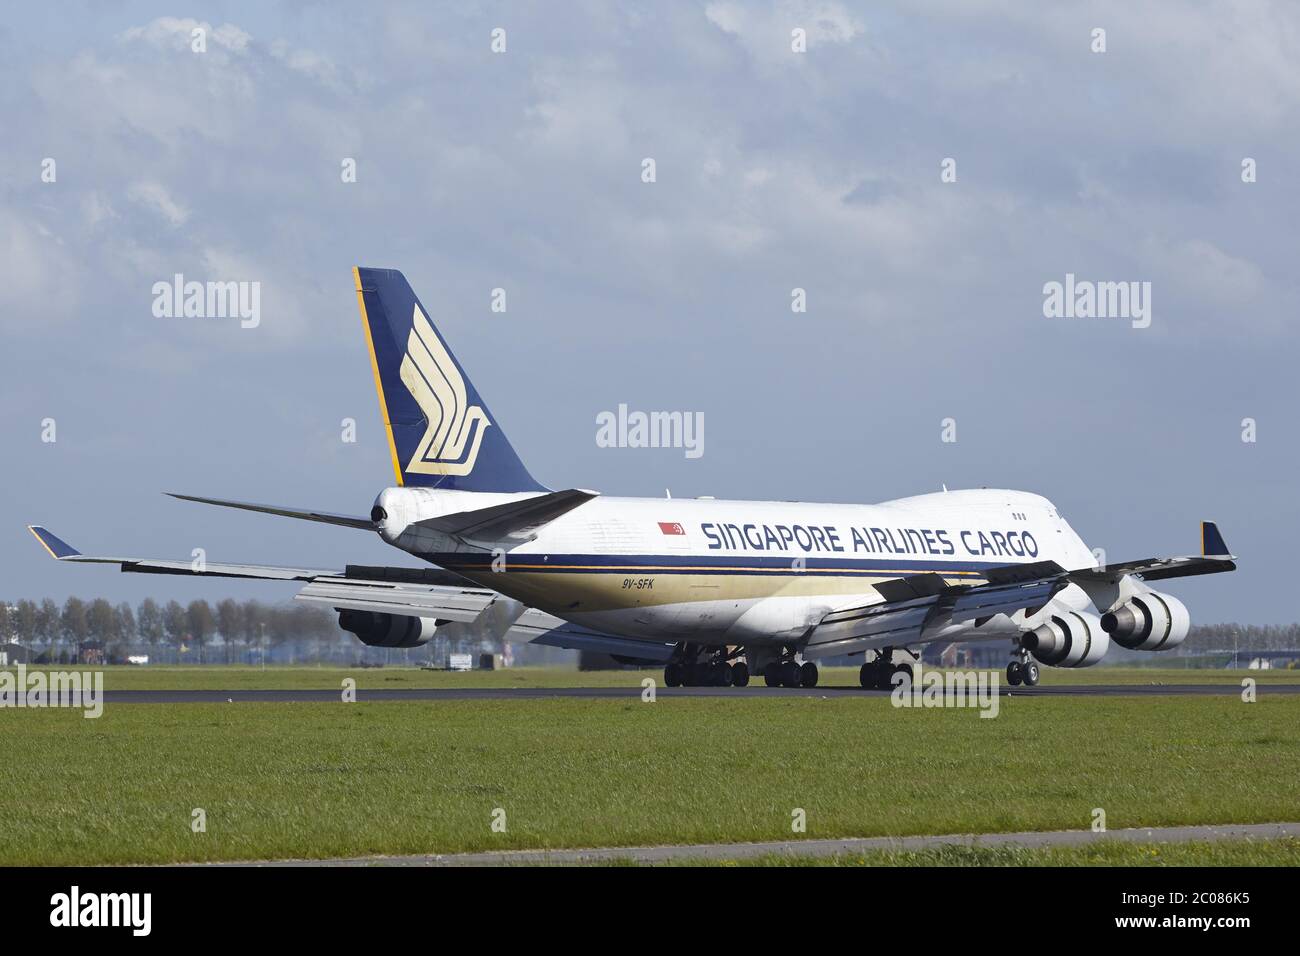 Aeroporto di Amsterdam Schiphol - il Boeing 747 di Singapore Airlines Cargo atterra Foto Stock